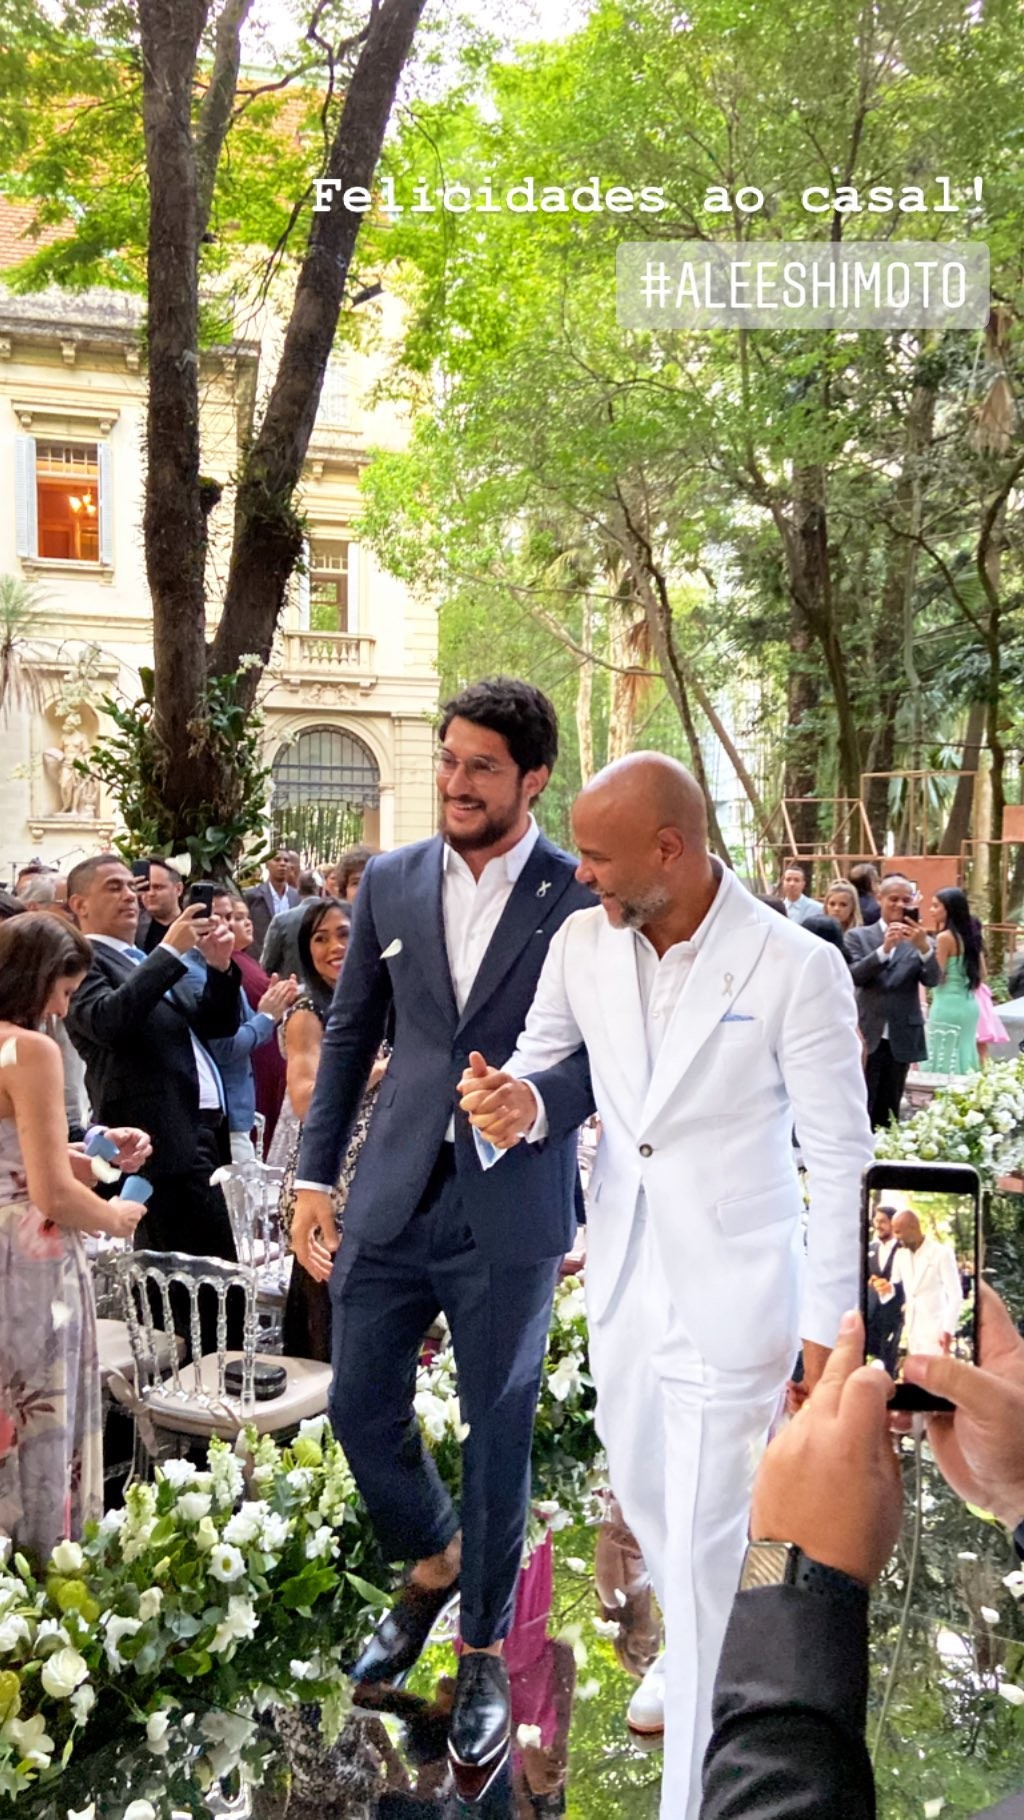 Casamento de Ale de Souza e Rodrigo Shimoto (Foto: Reprodução/Instagram)